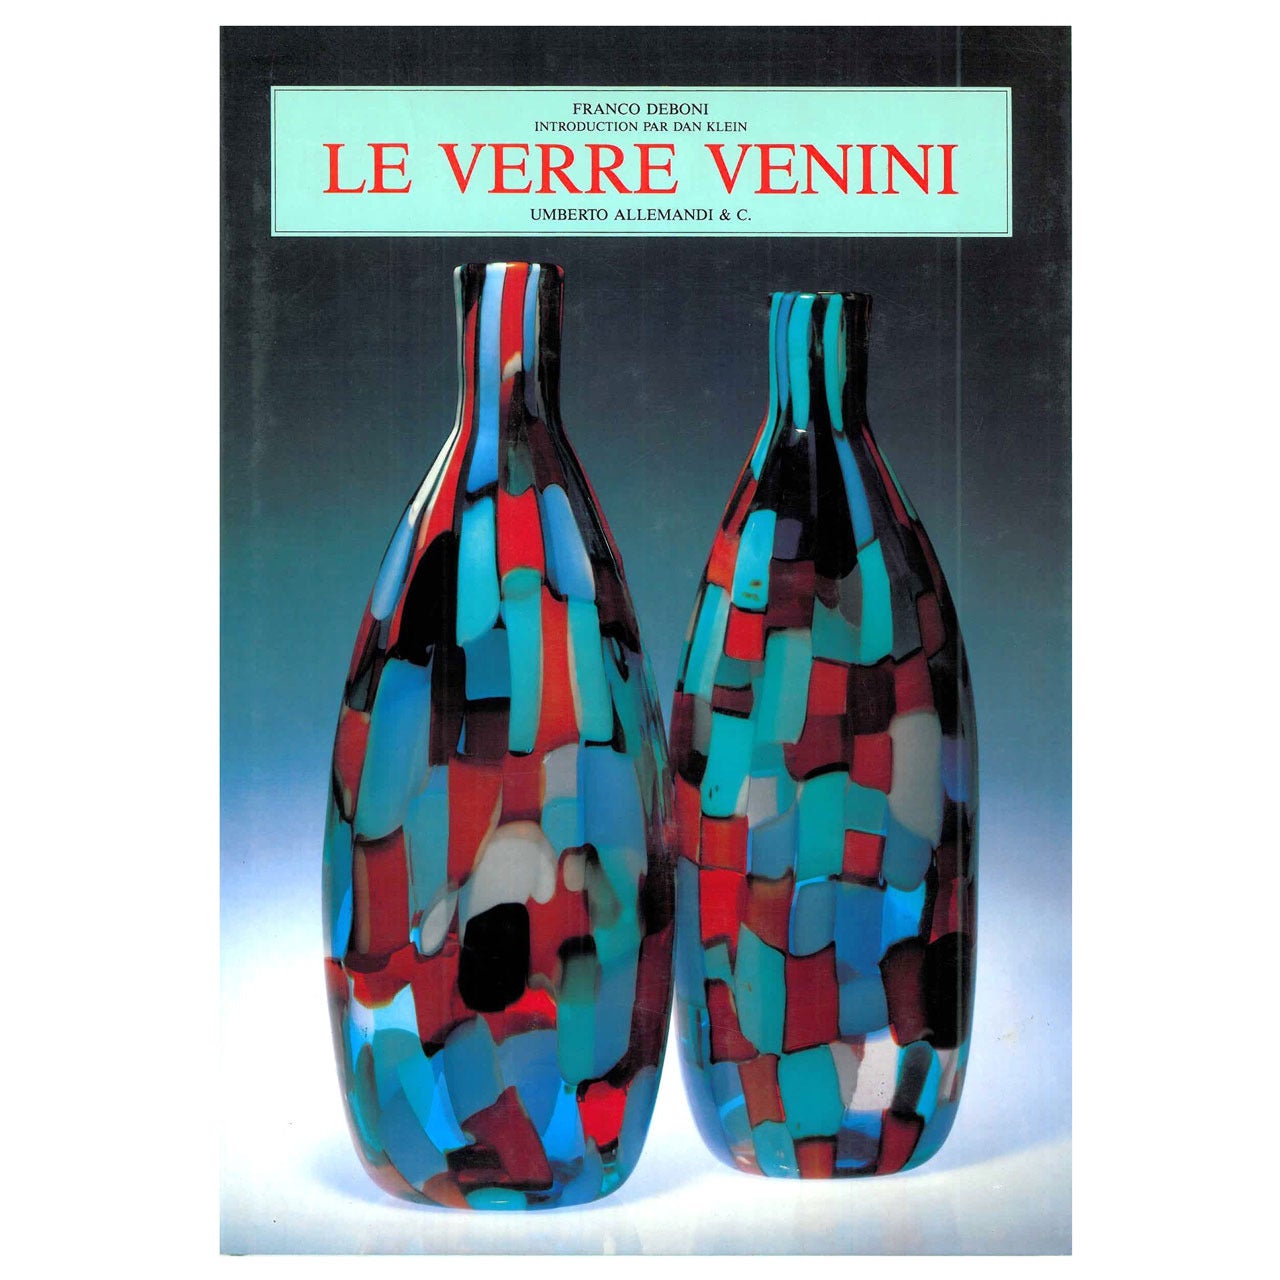 Le Verre Venini by Franco Deboni (Book) For Sale